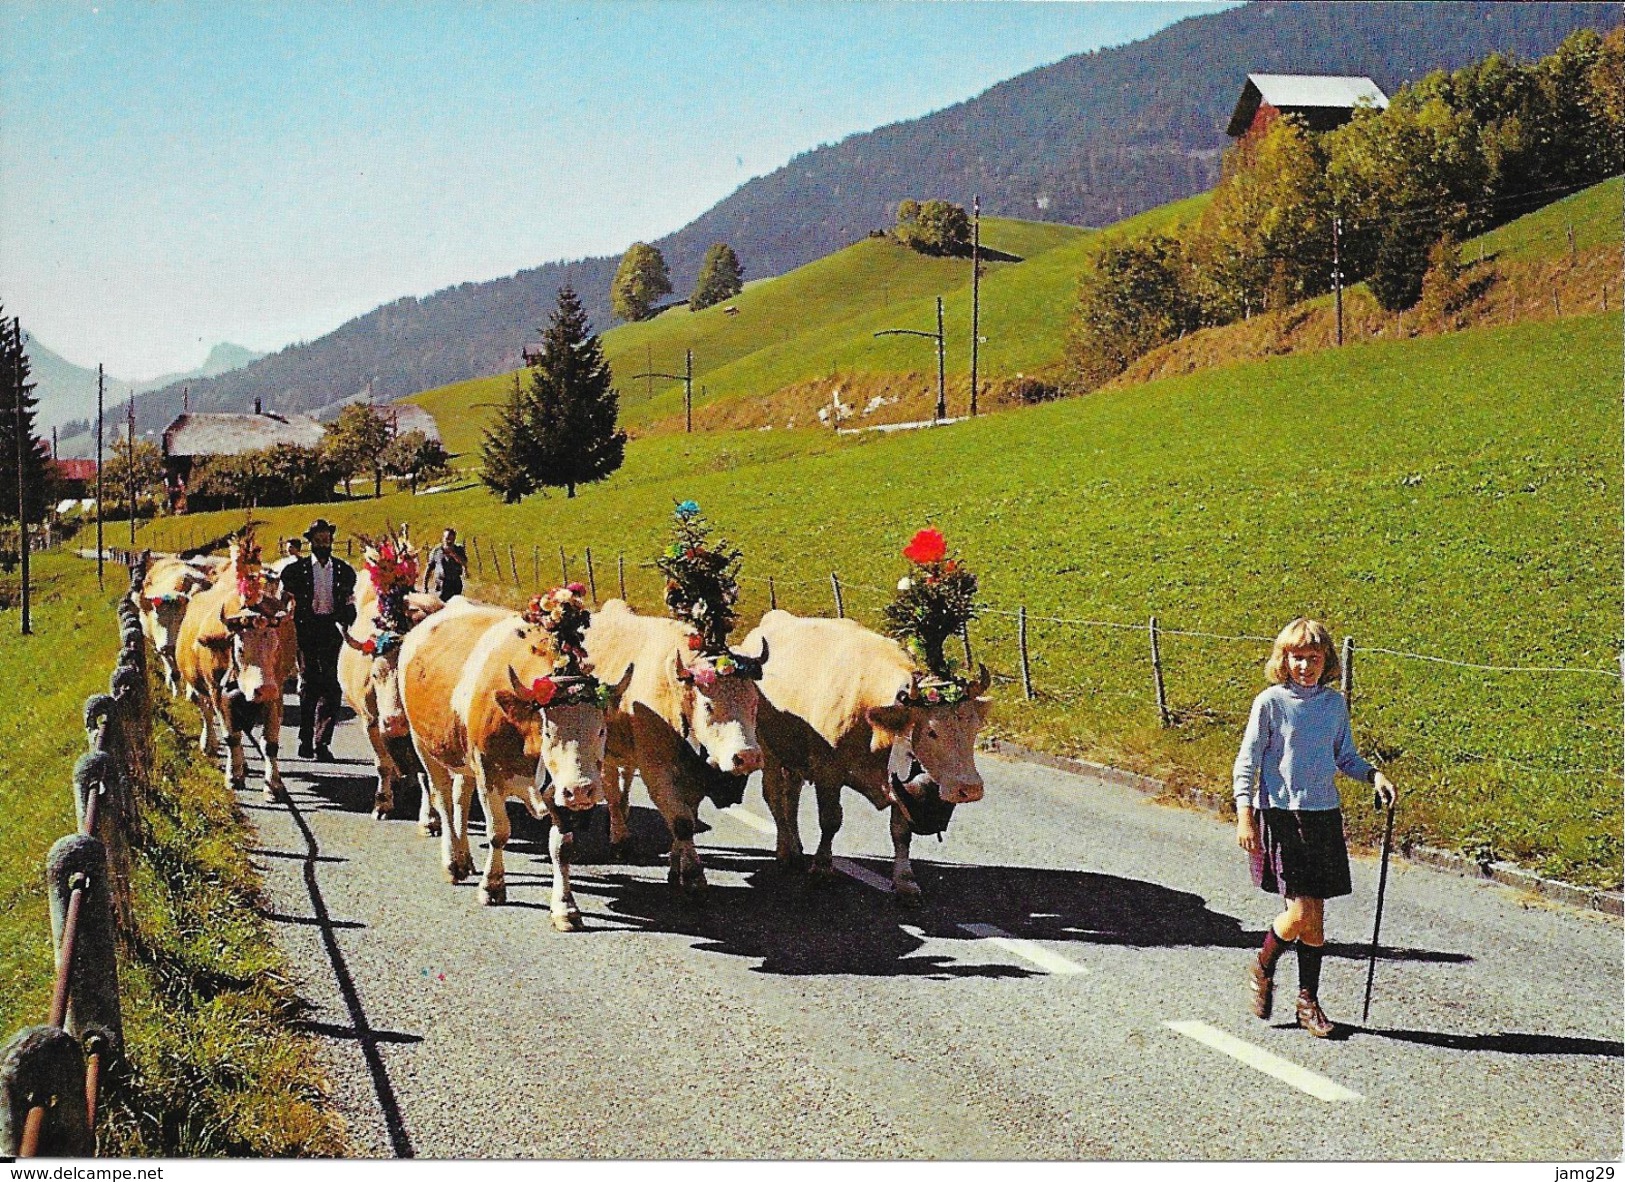 Zwitserland/Die Schweisz/Suisse, Alpaufzug, 1977 - Zug